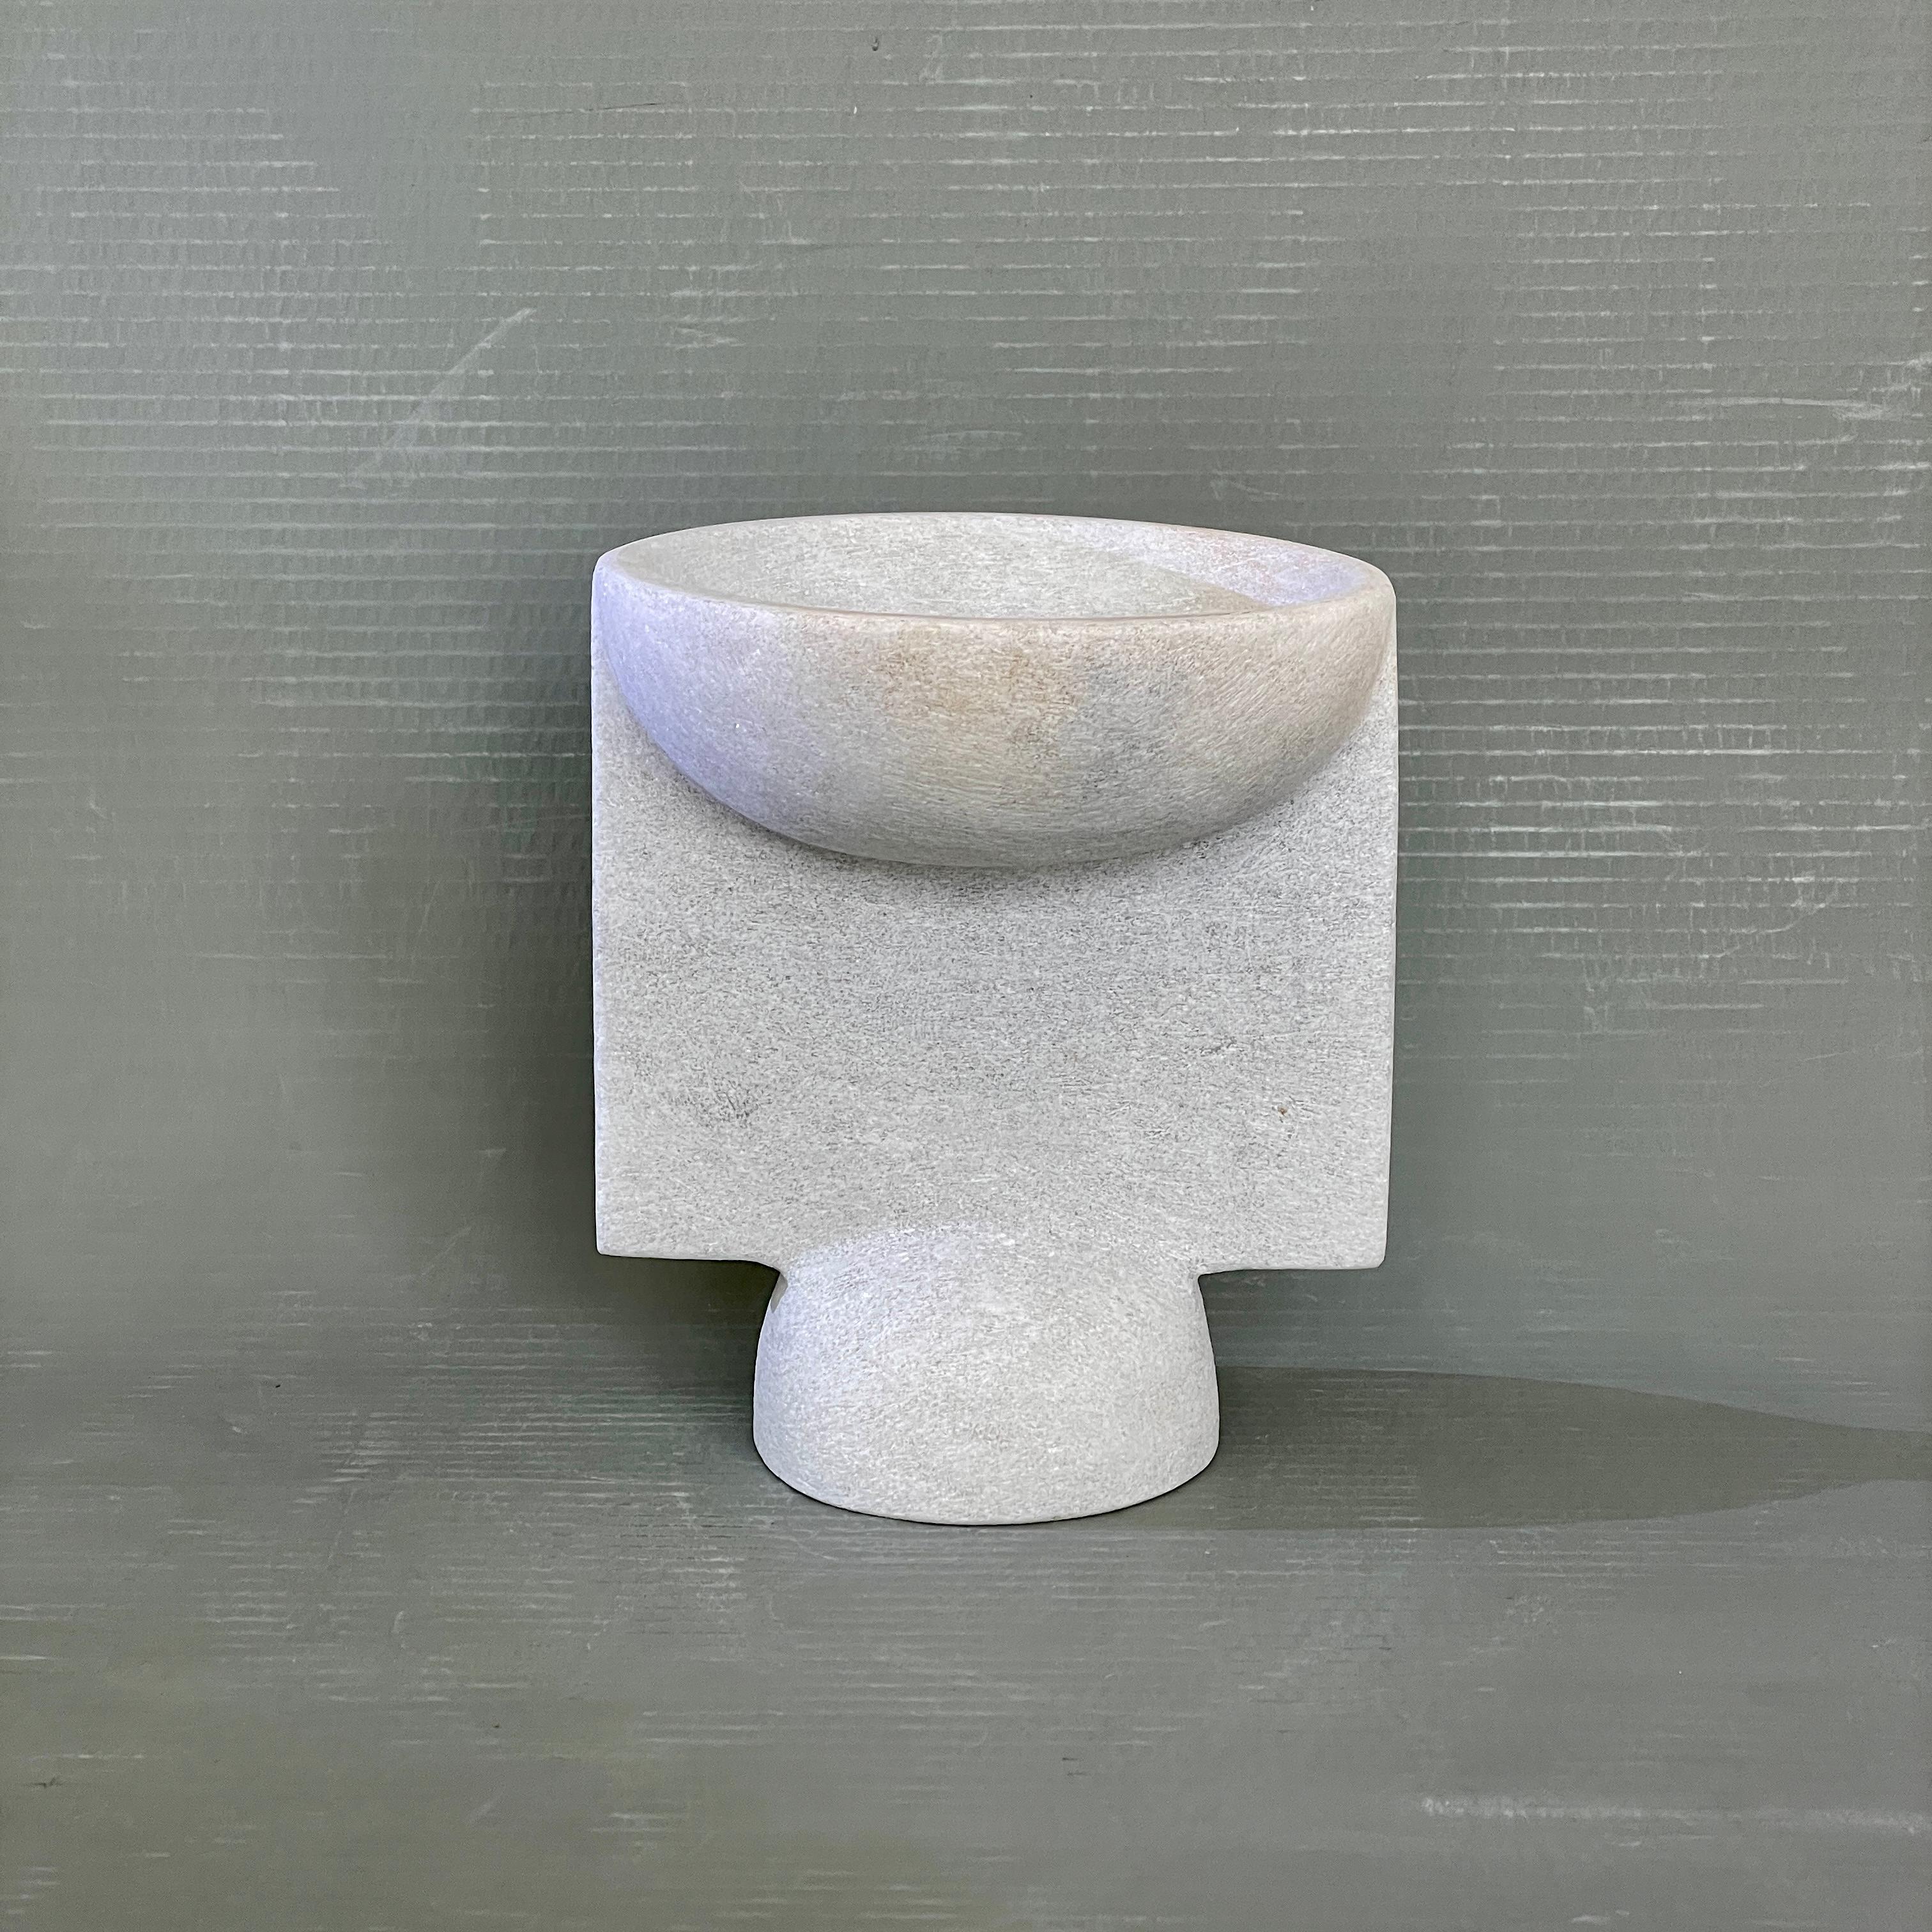 Vase en marbre sculpté à la main par Tom Von Kaenel
Matériaux : marbre
Dimensions : L17 x P17 x H20 cm

Tom von Kaenel, sculpteur et peintre, est né en Suisse en 1961. Déjà au début de sa vie
Dès son enfance, il s'est profondément consacré à l'art.